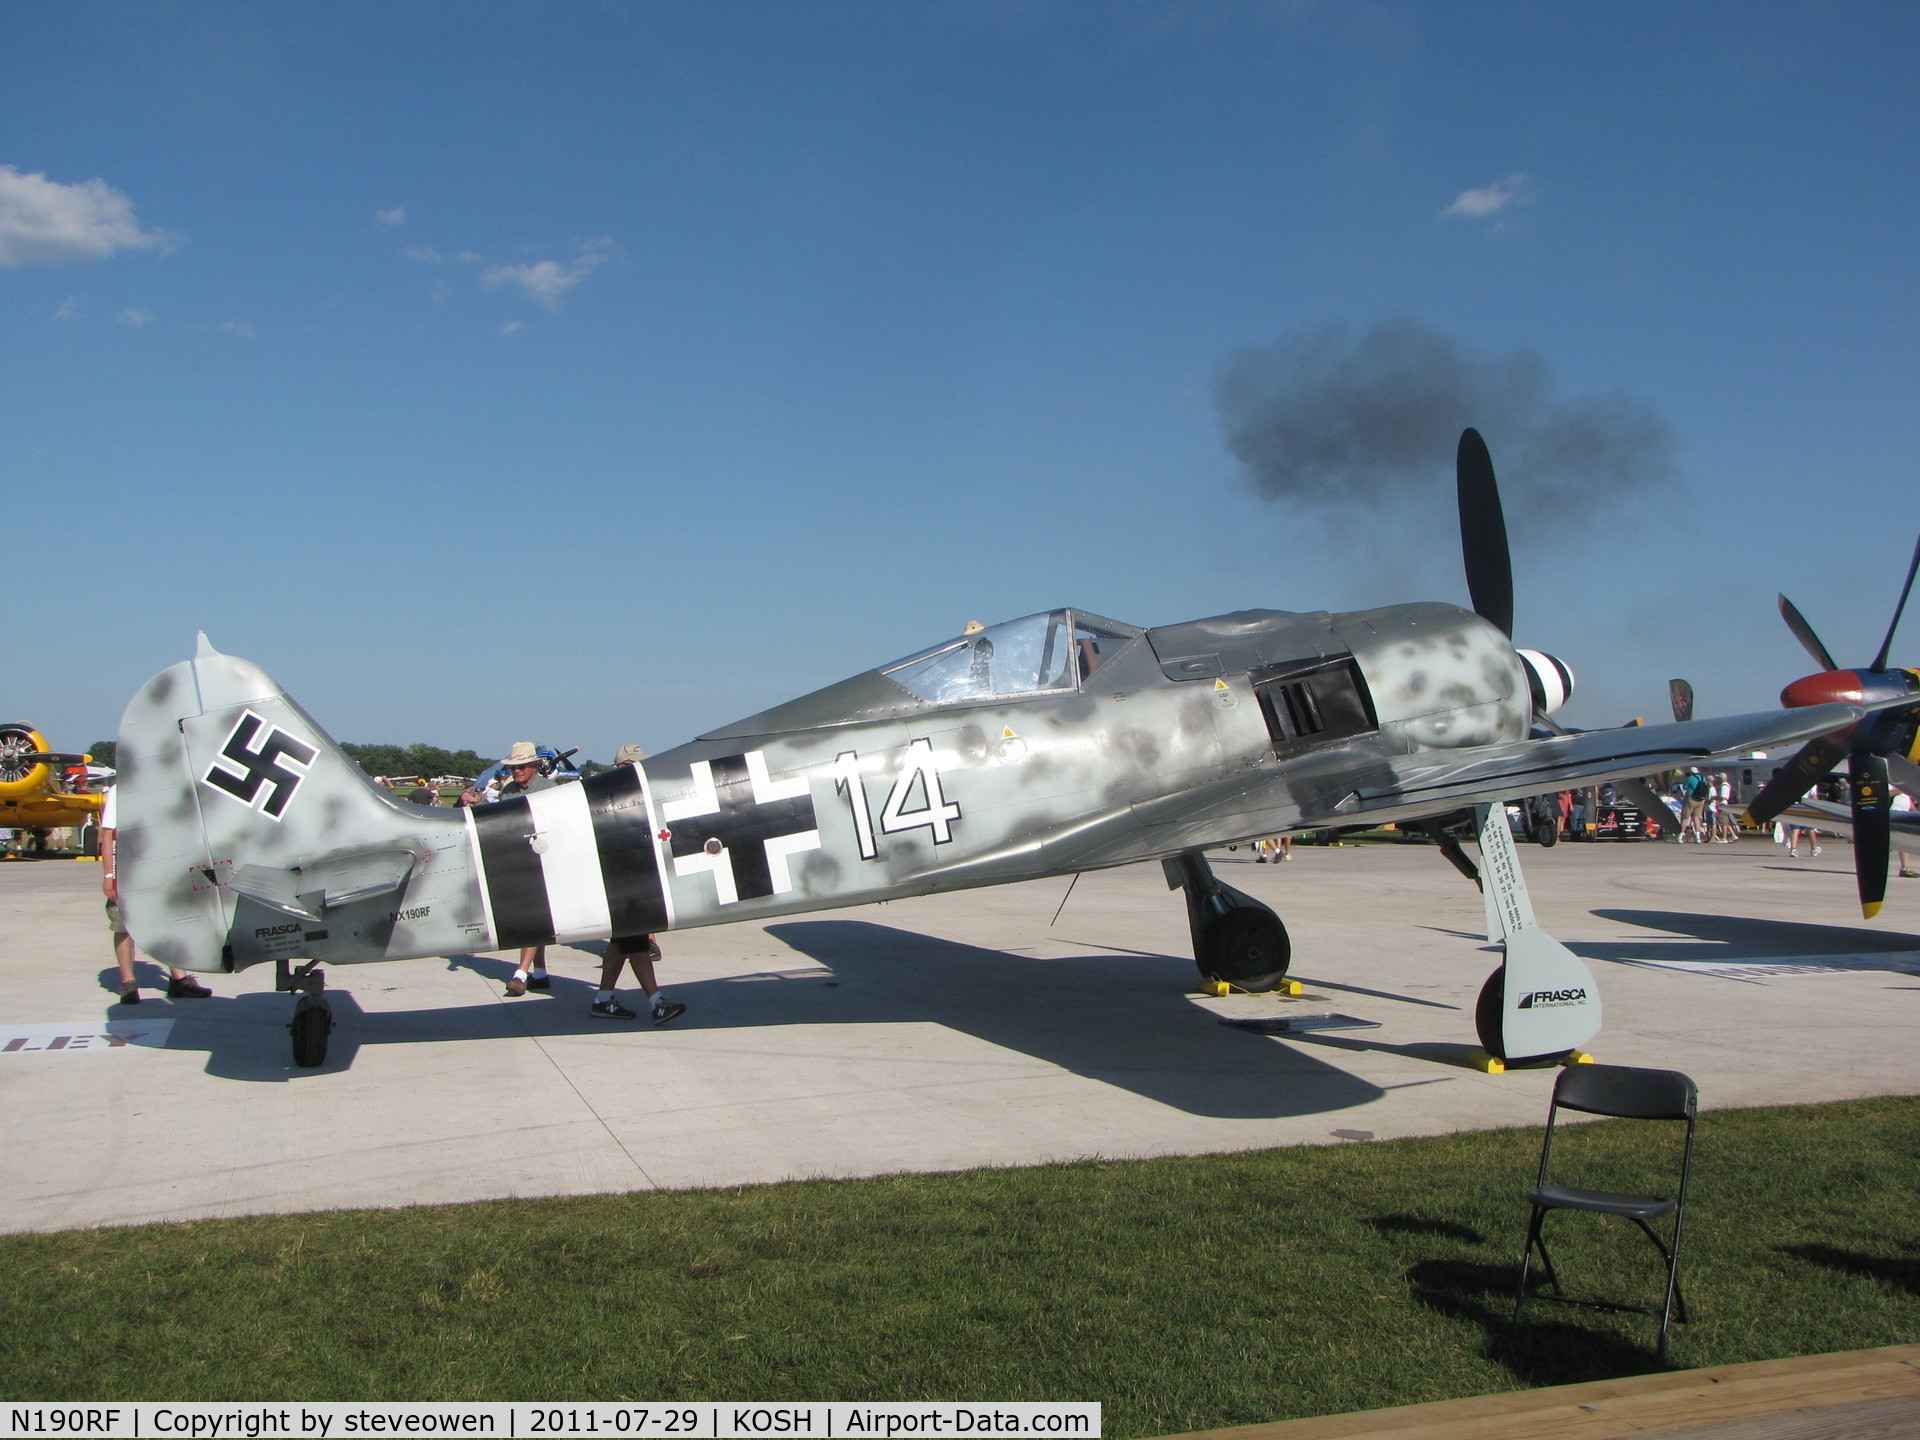 N190RF, Focke-Wulf Fw-190A-9 C/N 980 574, on display @KOSH EAA 2011